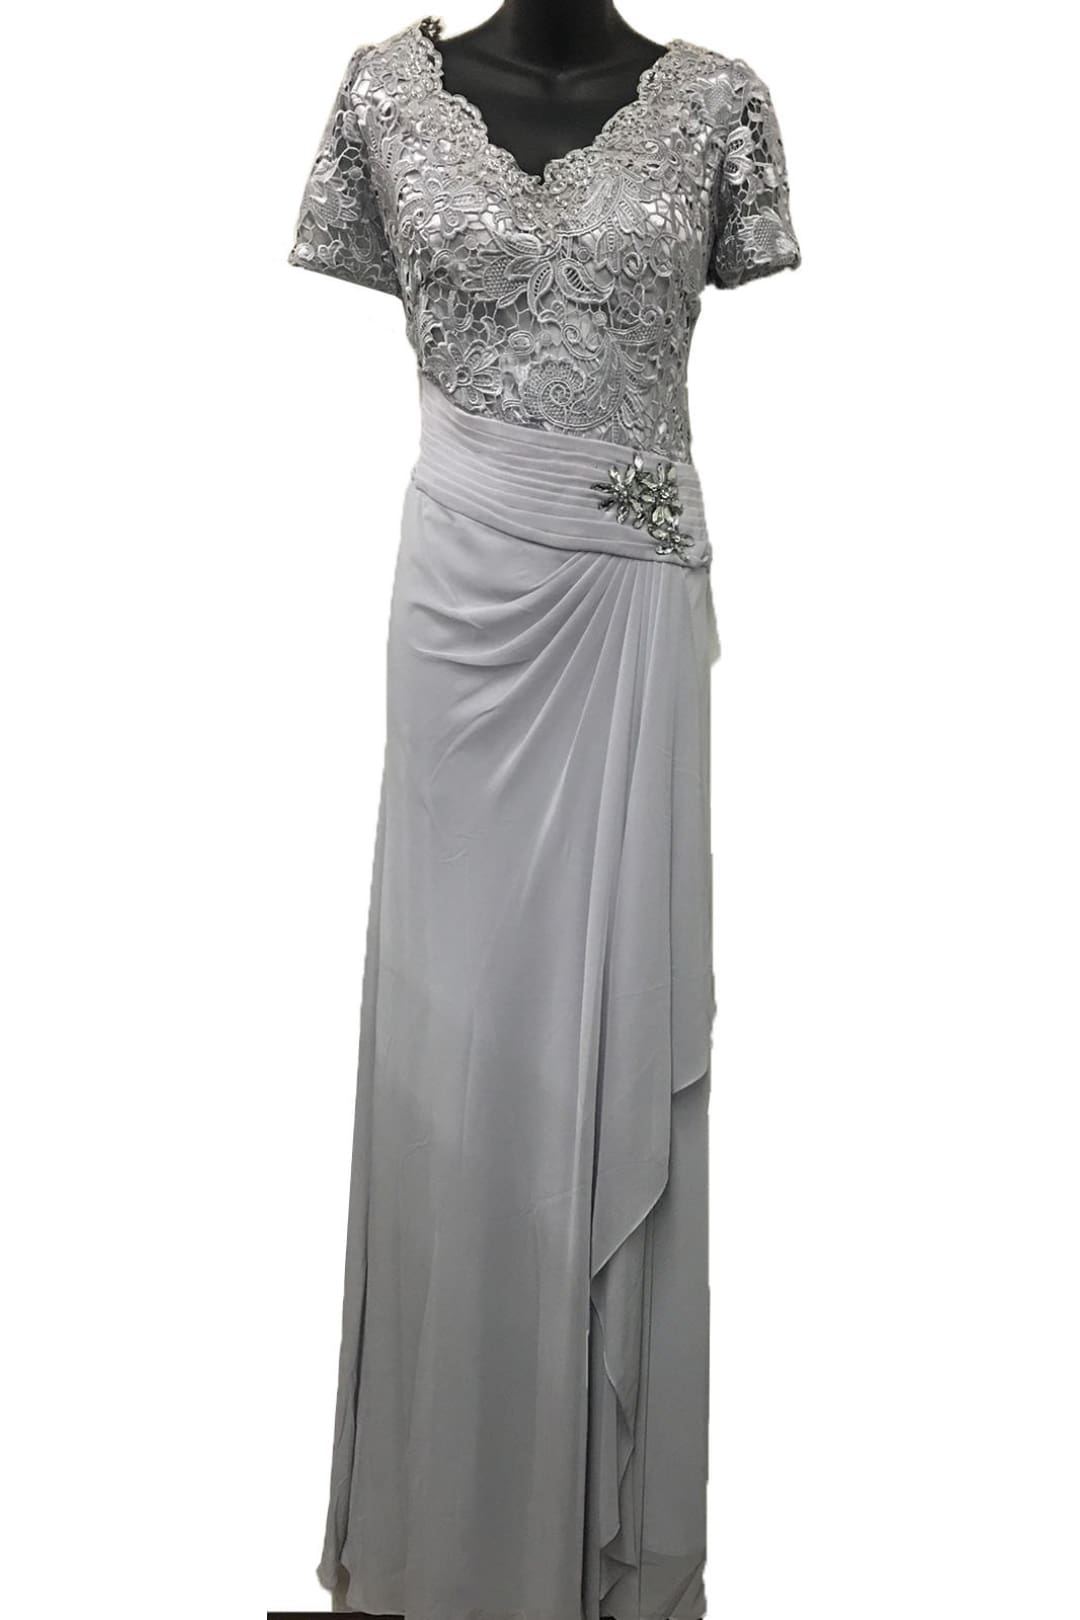 Quarter sleeve lace & sequins chiffon dress- LA1229